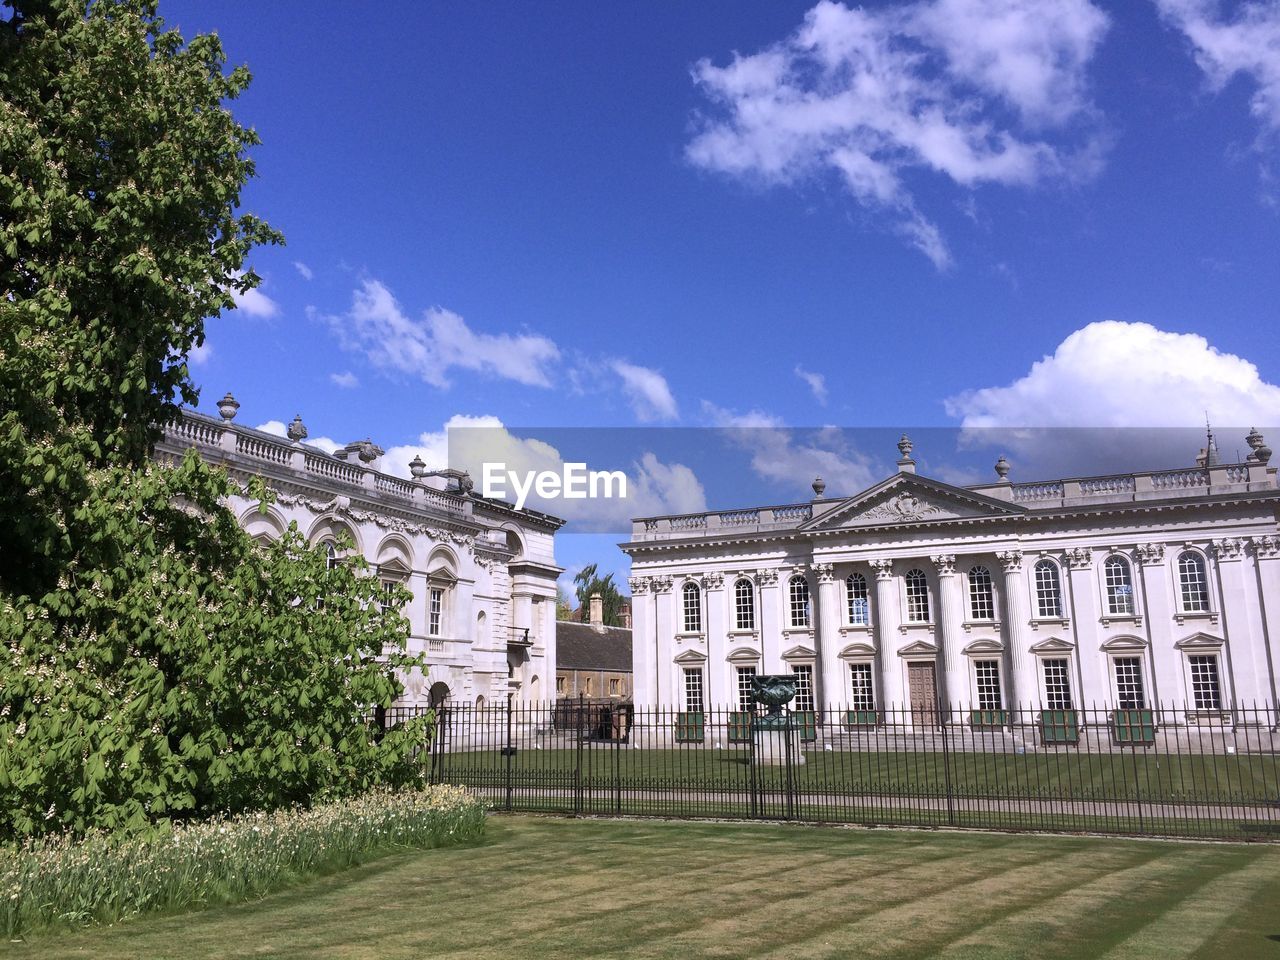 Façade of senate house and garden against blue sky